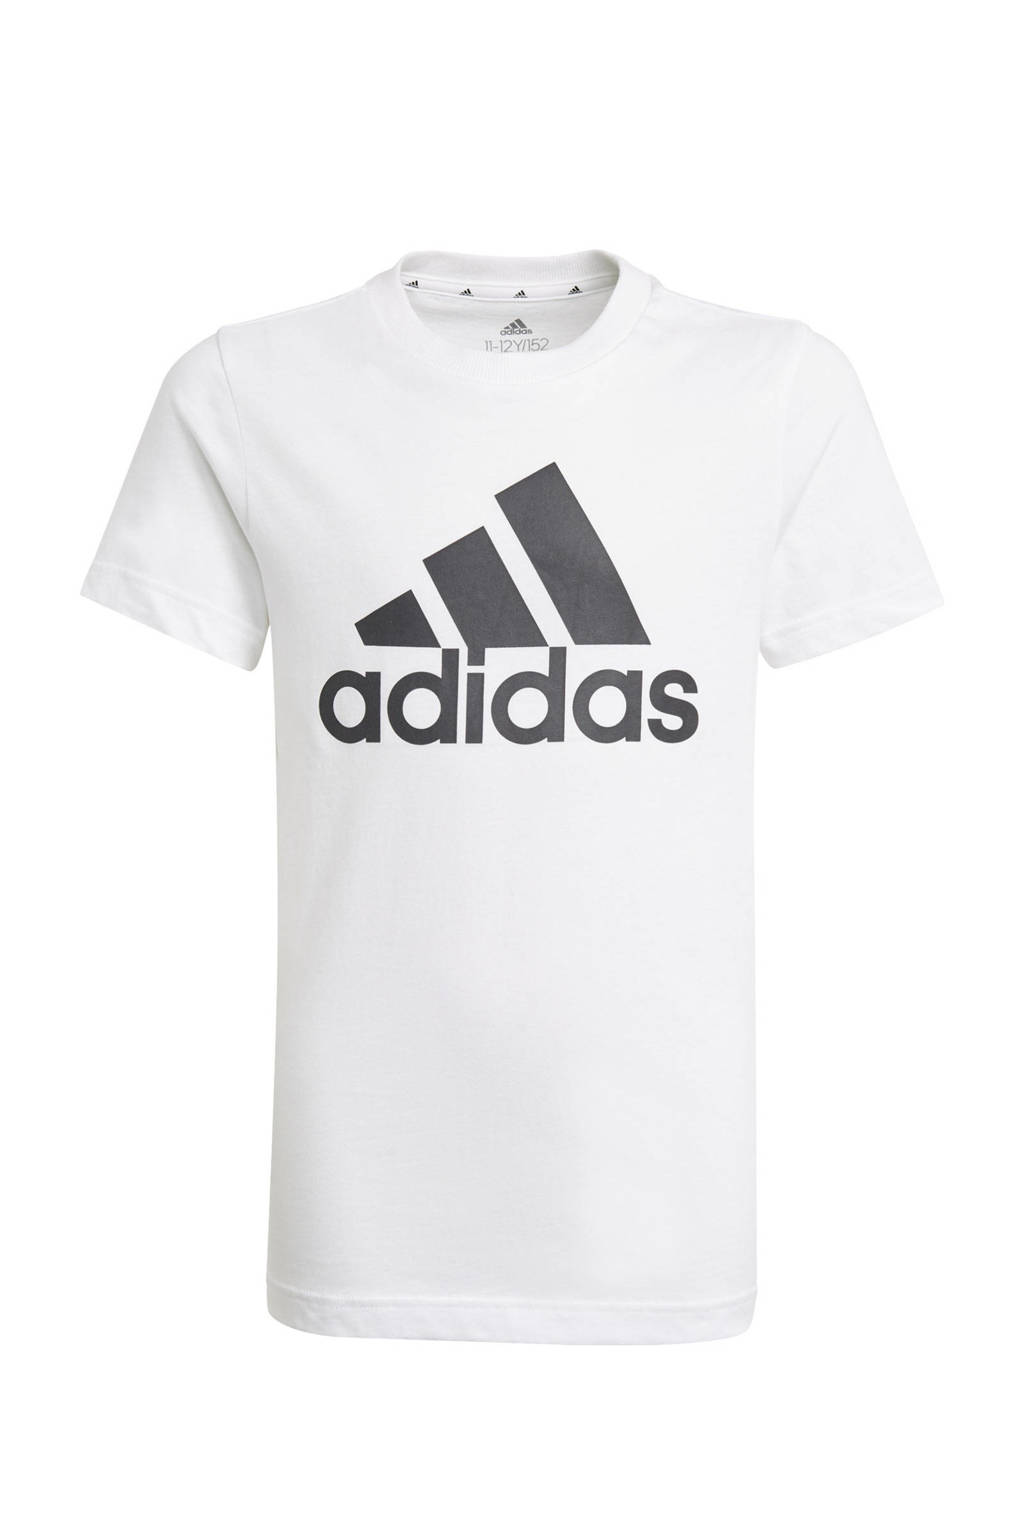 adidas Performance   sport T-shirt wit/zwart